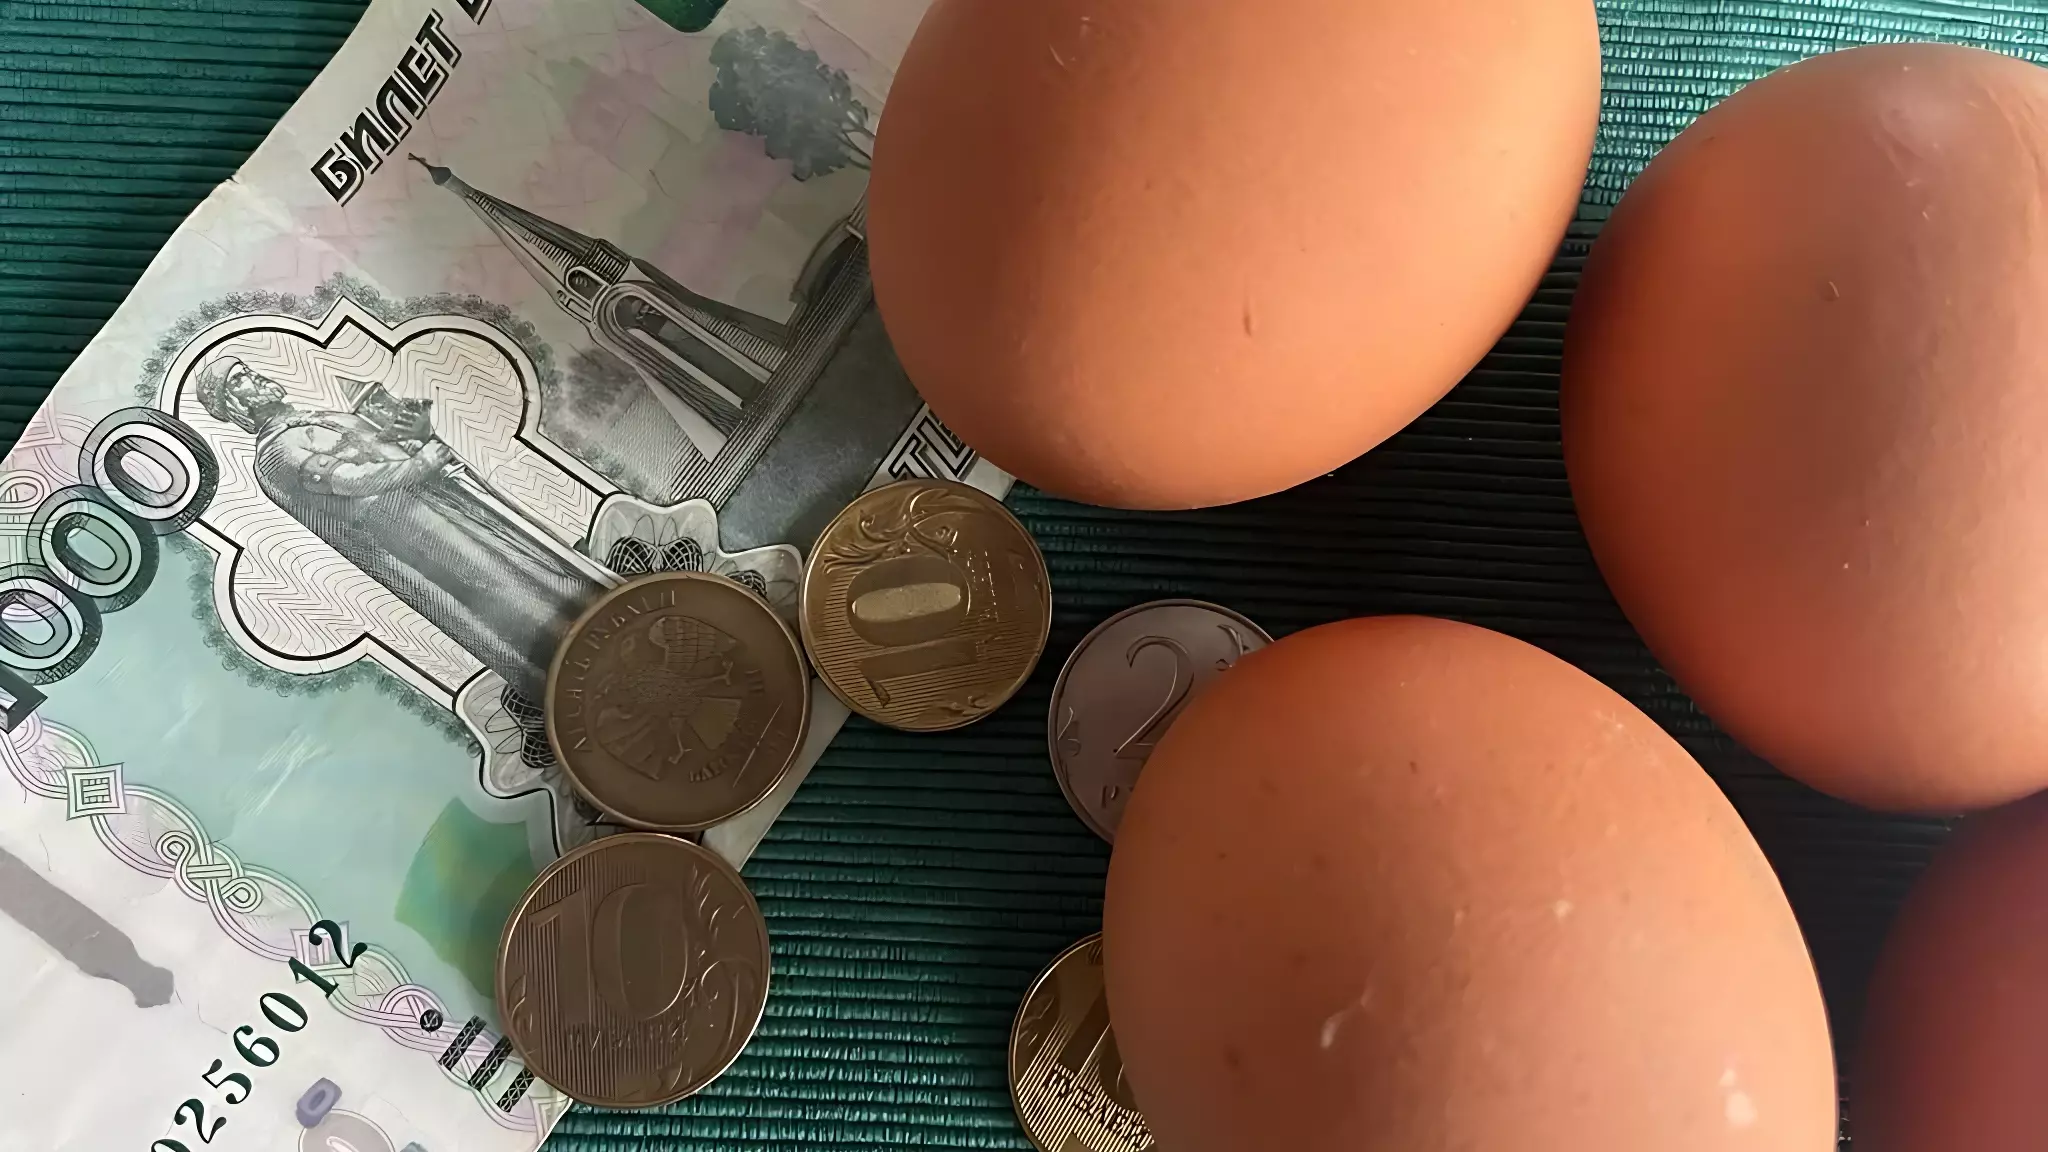 Яйца начали поштучно продавать в Ростове-на-Дону после резкого подорожания